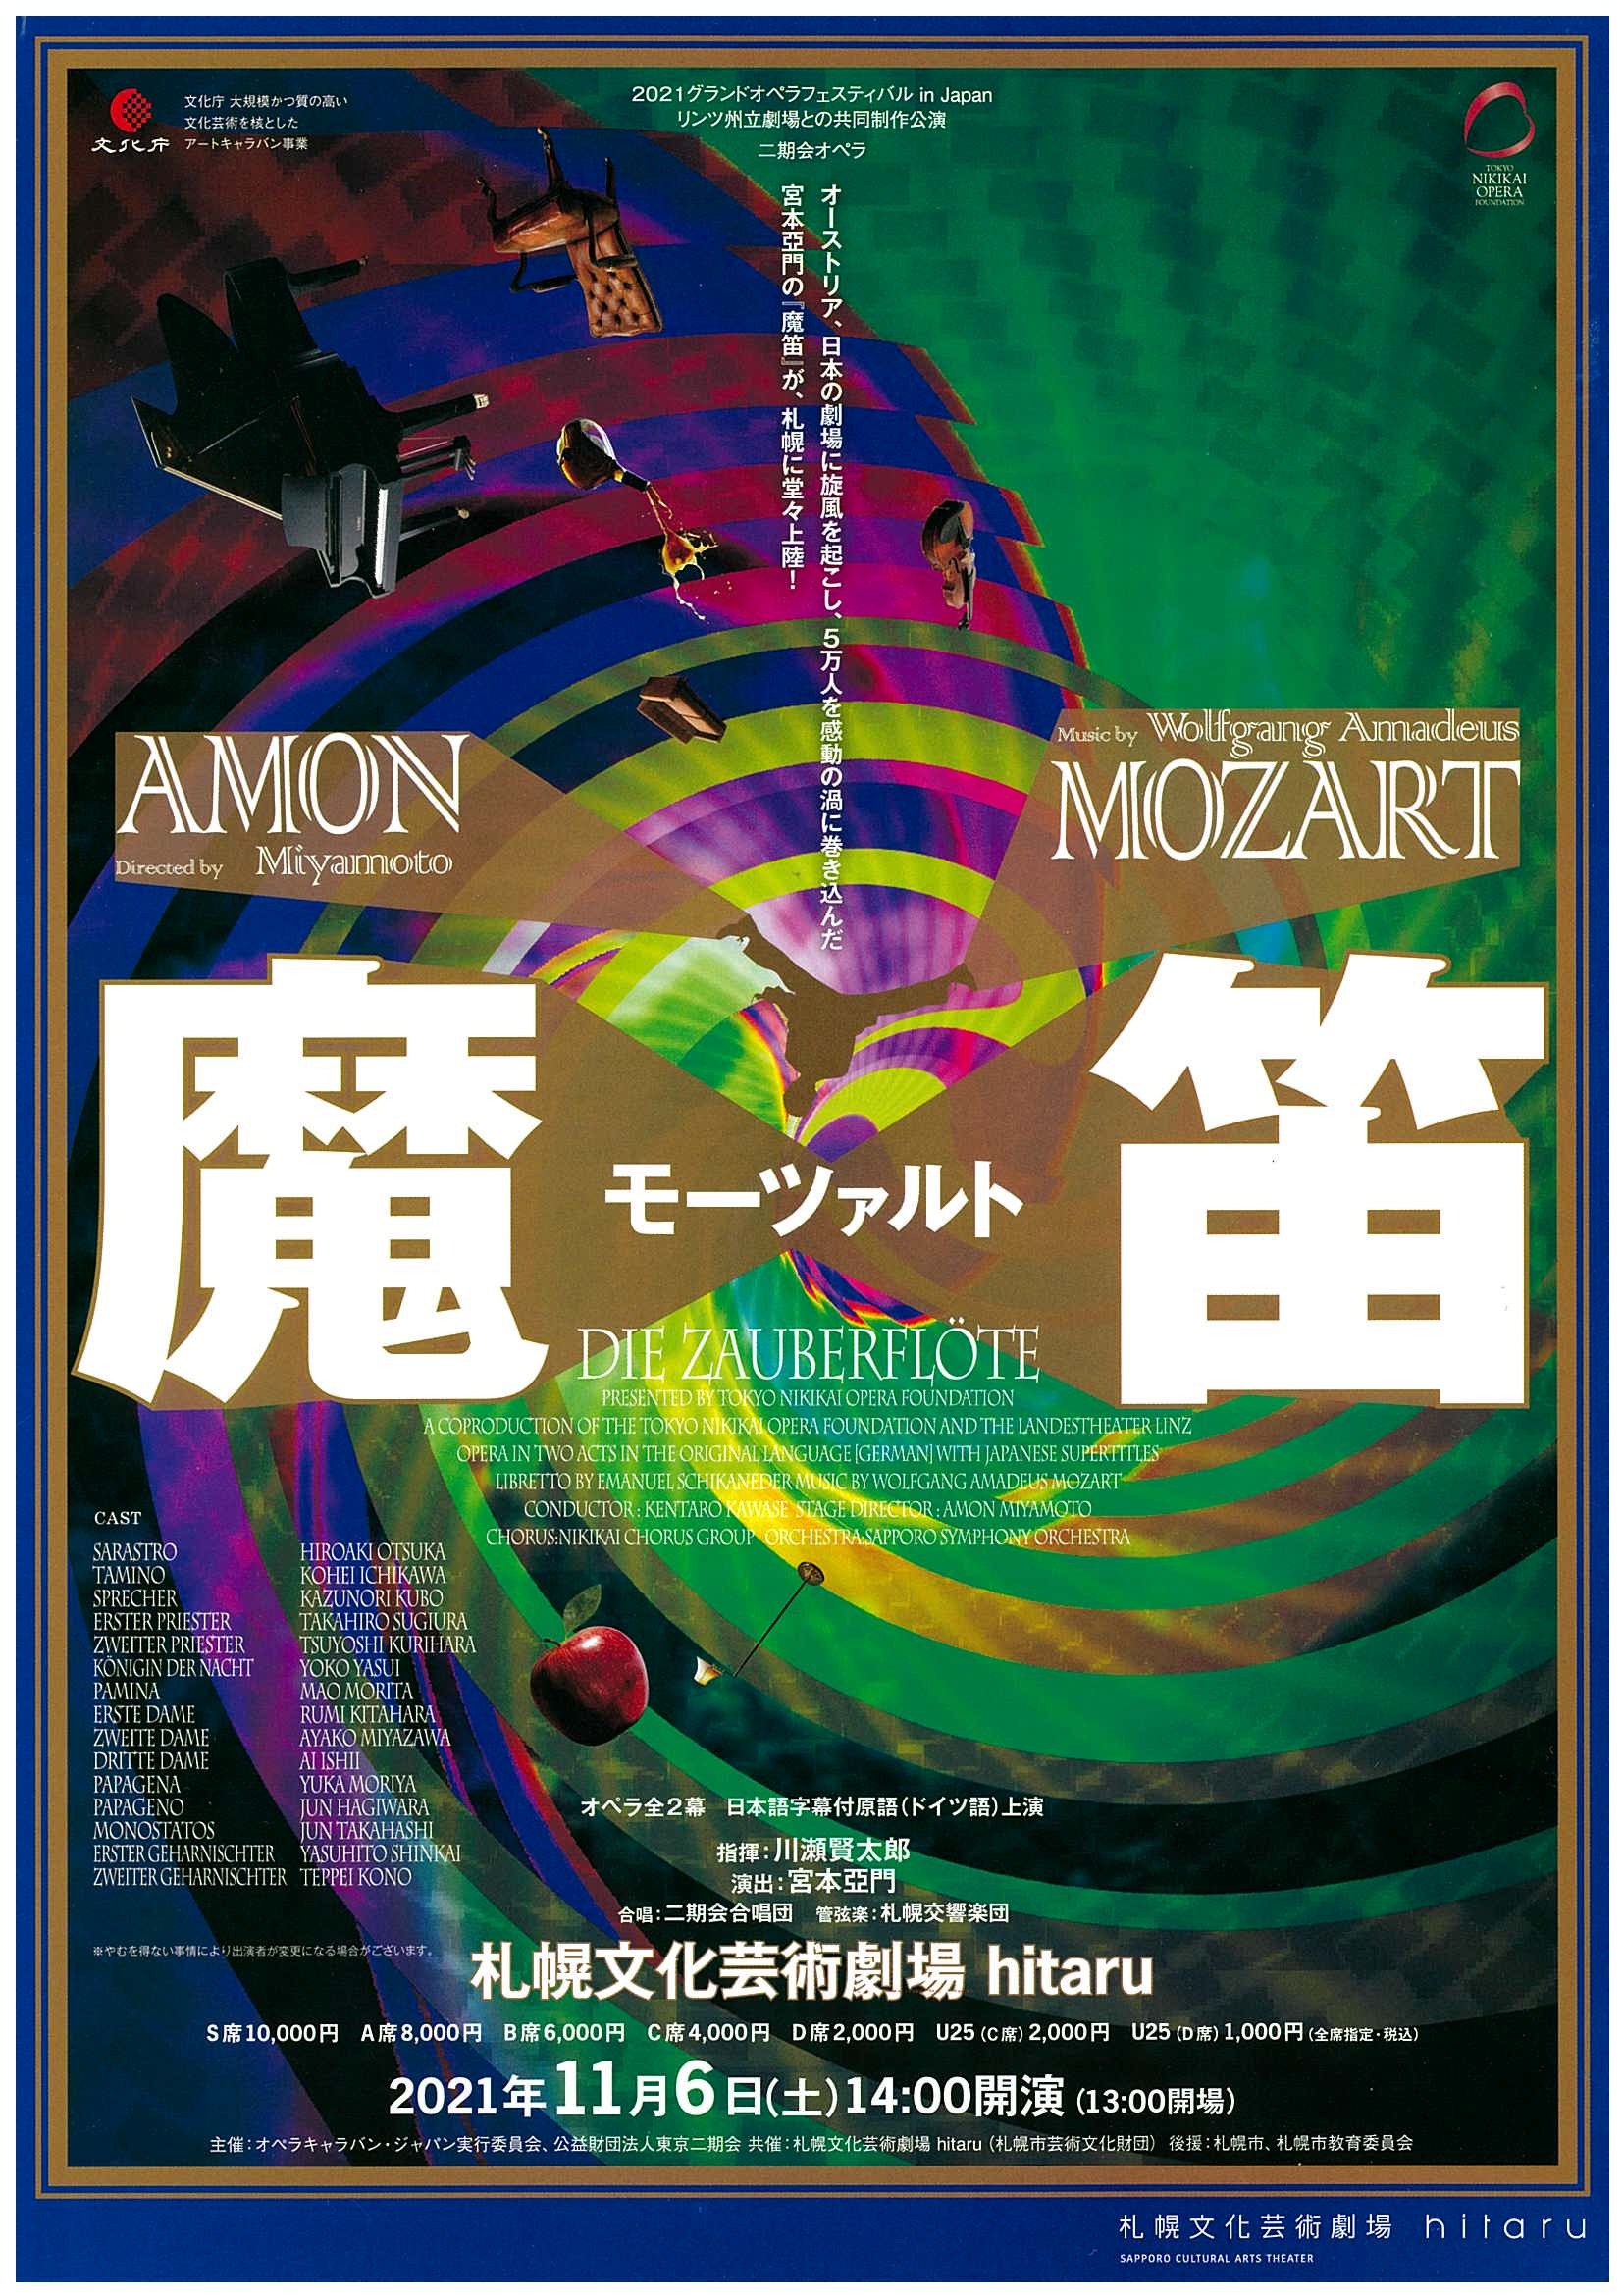 モーツァルト 魔笛 21グランドオペラフェスティバル In Japan 札幌交響楽団 Sapporo Symphony Orchestra 札響